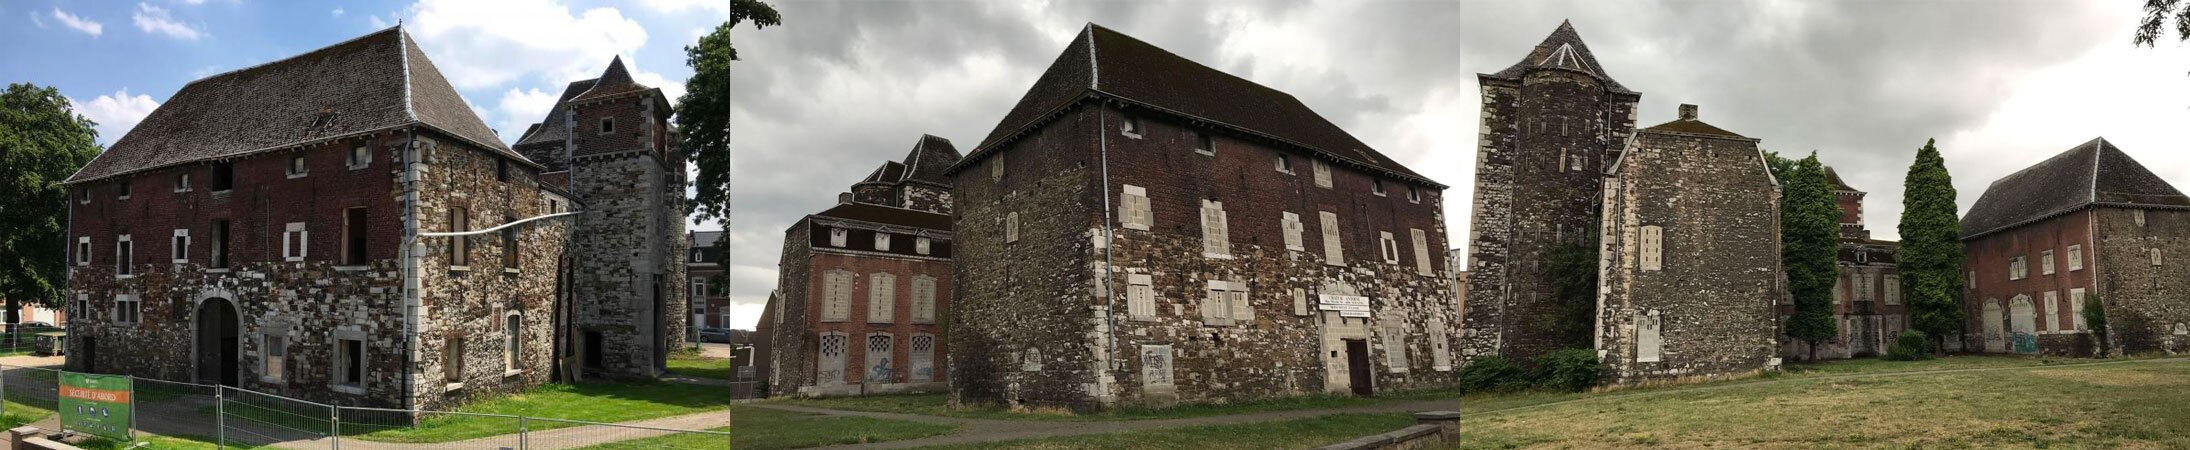 Syndicat d'initiative de Seraing - Tourisme - Les châteaux de Jemeppe - Antoine